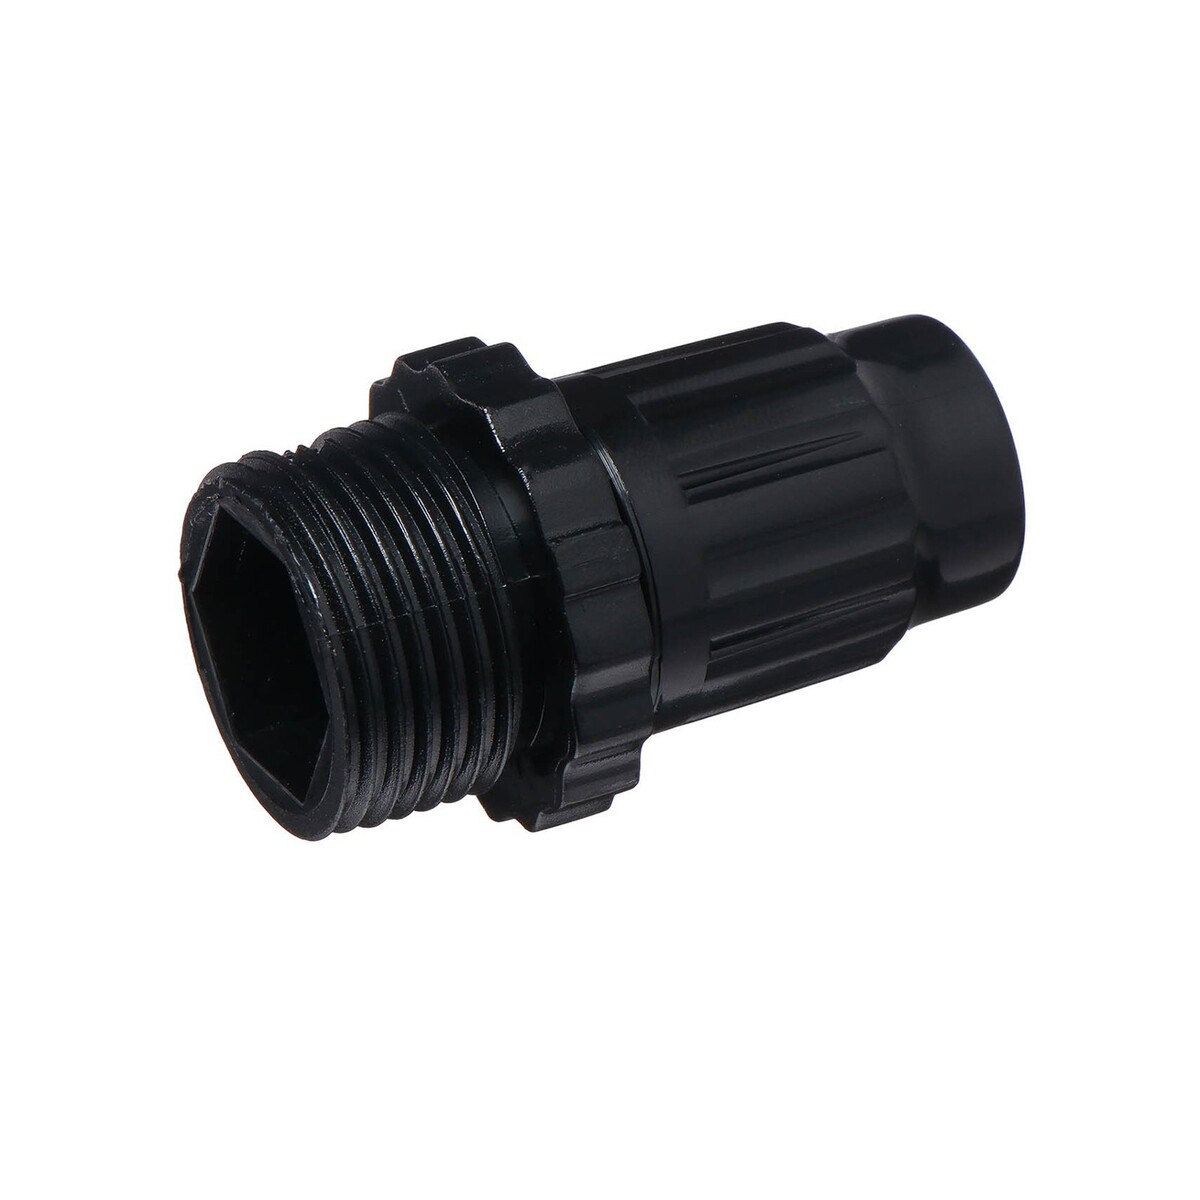 Коннектор для капельной трубки, 6 мм, наружная резьба 3/4 коннектор scott для трубки велогидранта plug and play 205991